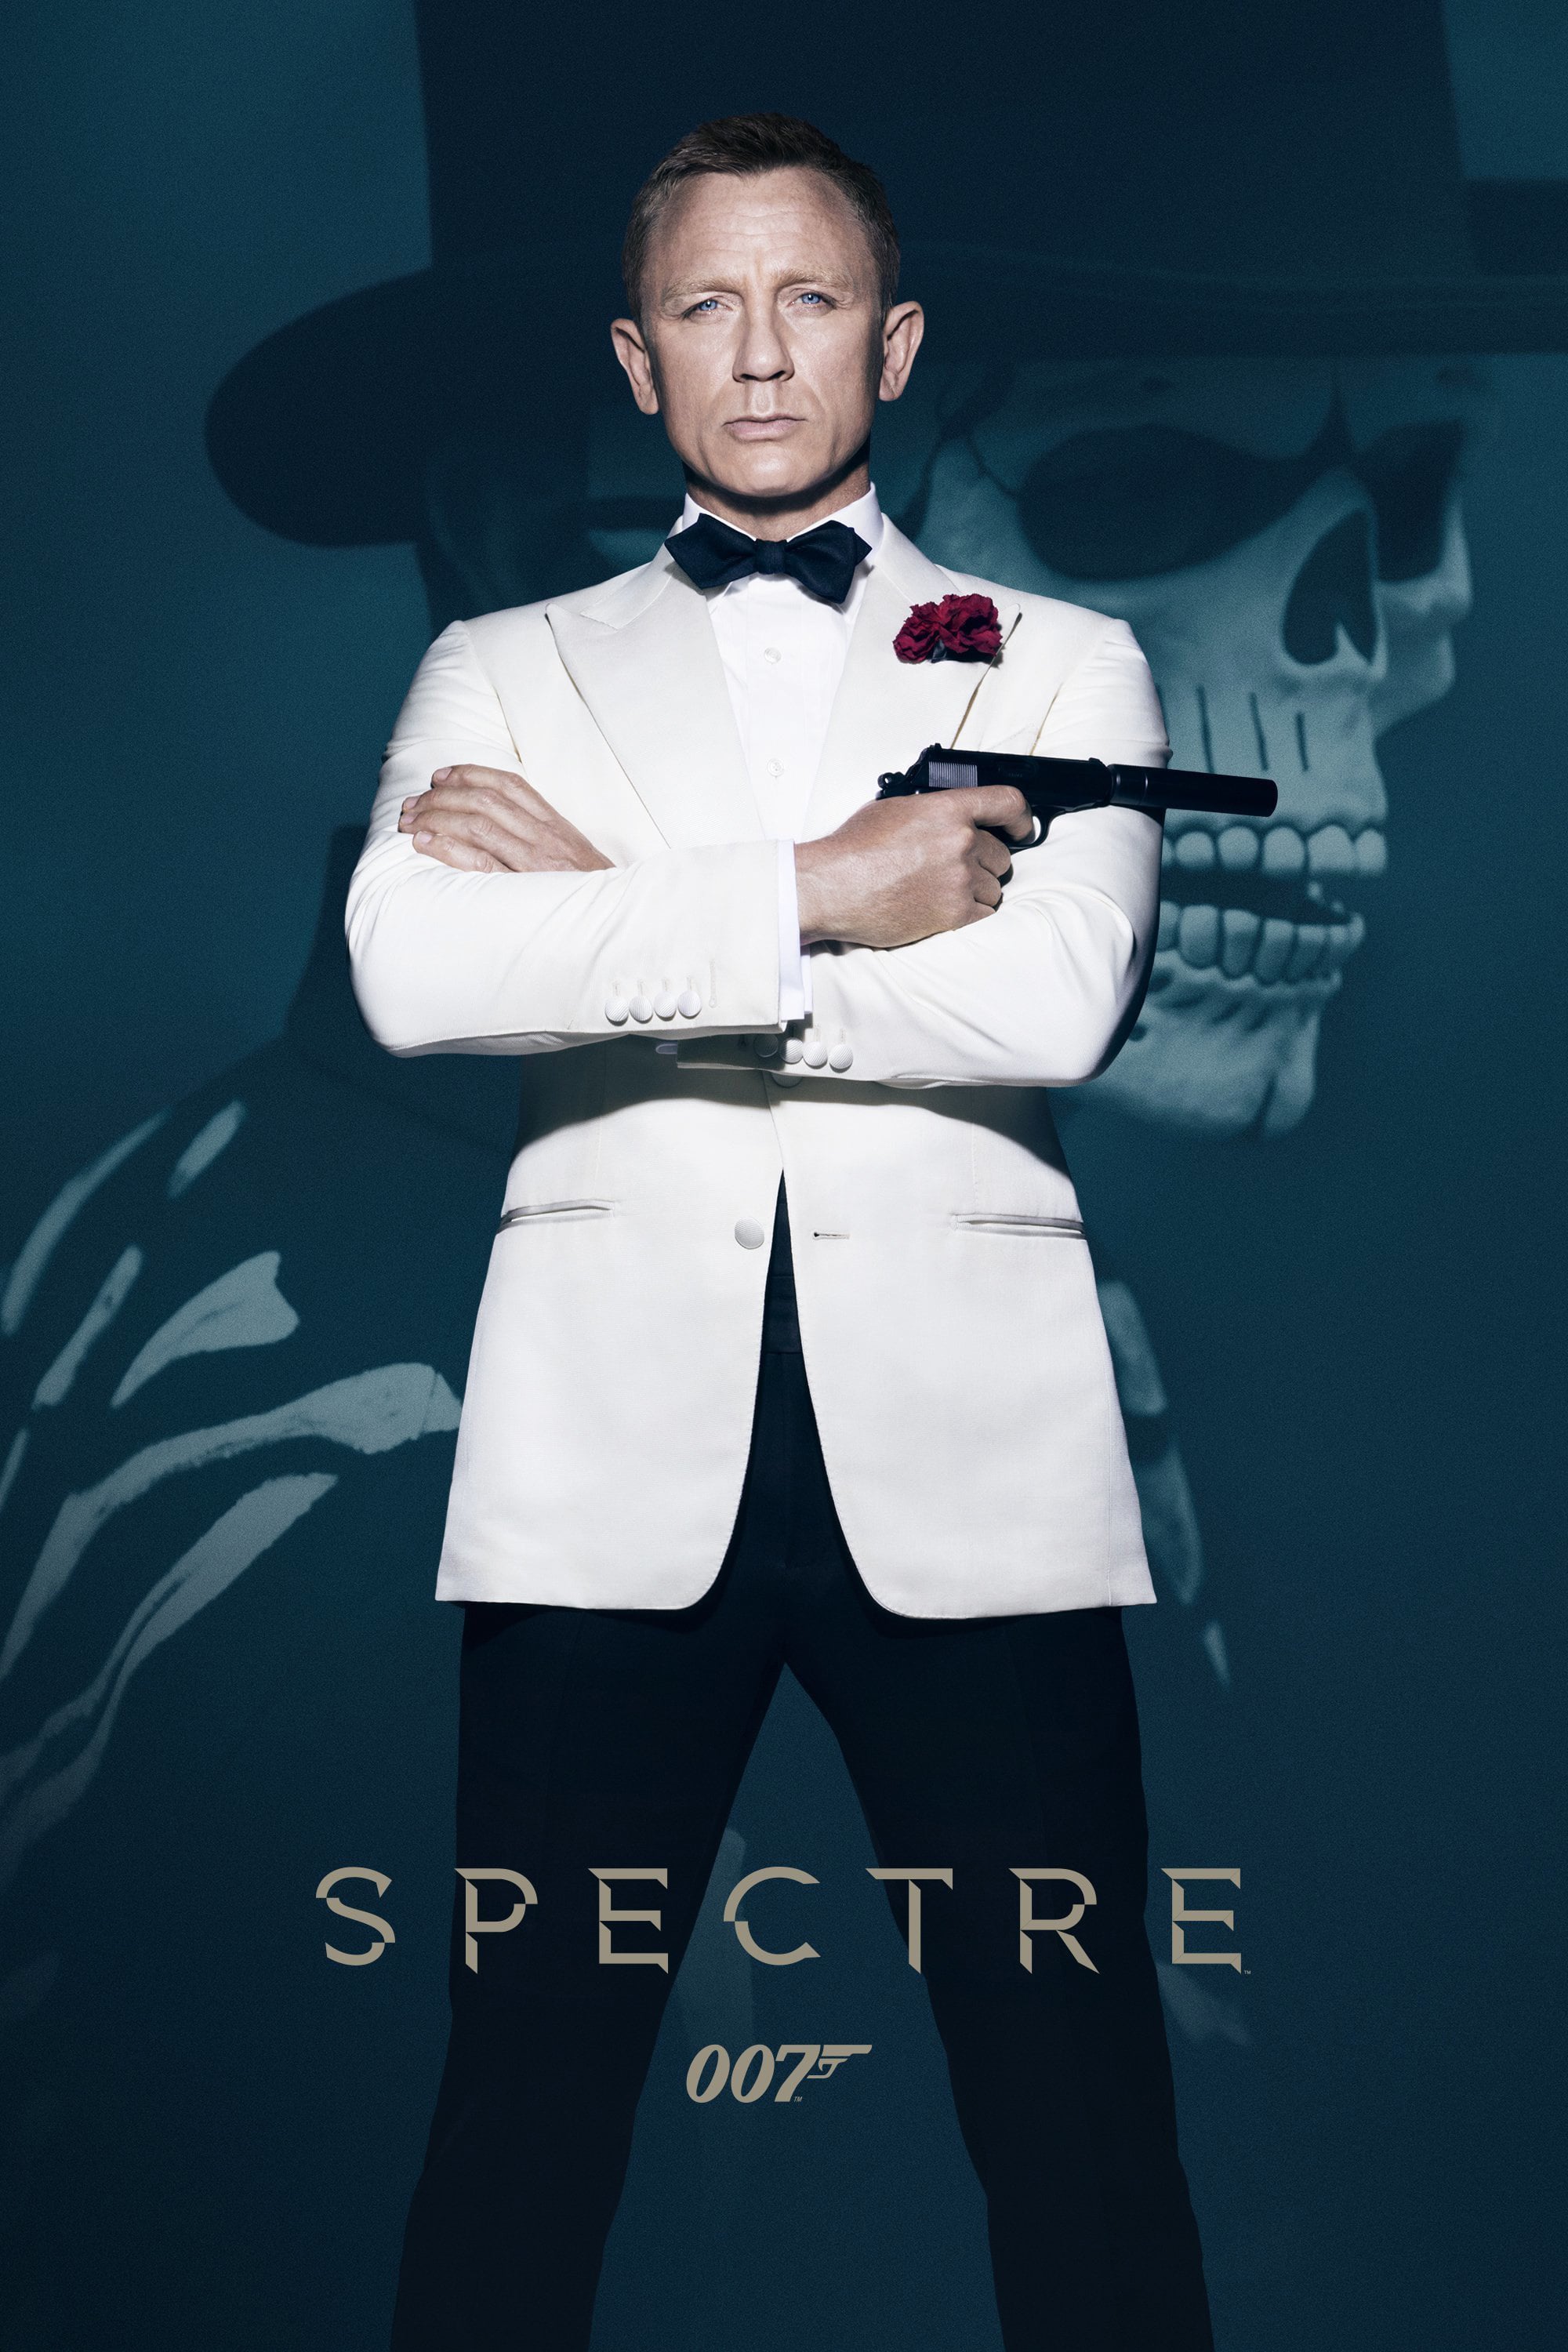 Affiche du film "Spectre"